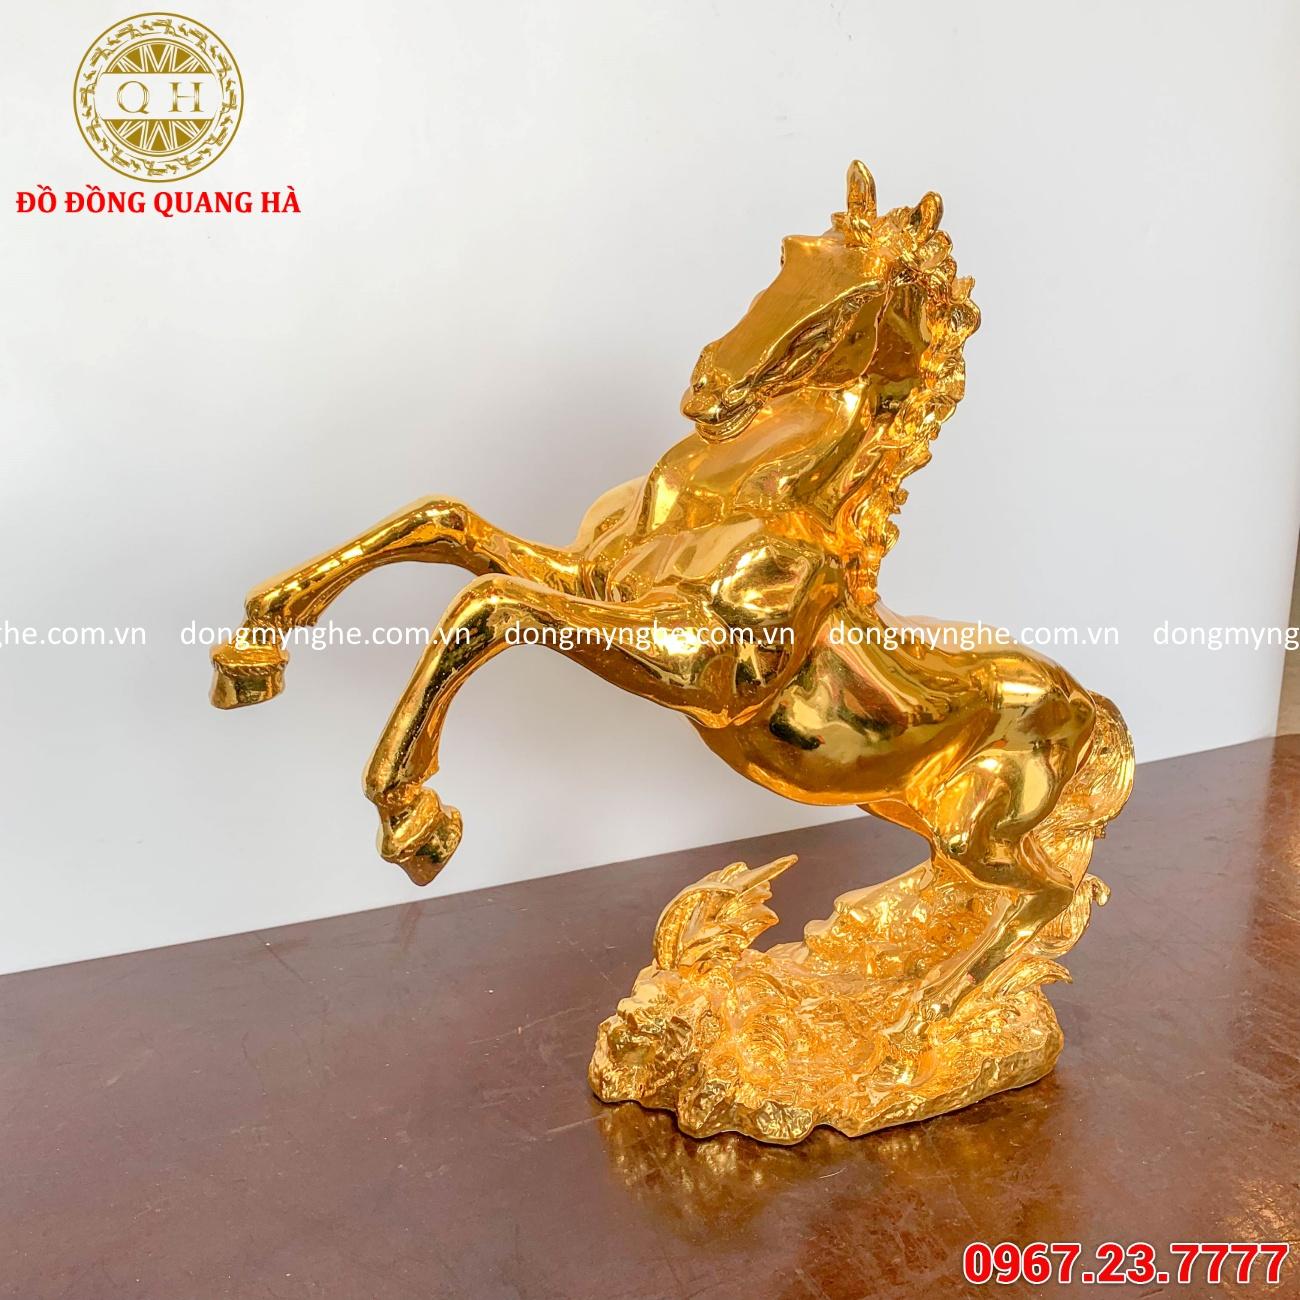 Tượng ngựa phong thủy bằng đồng mạ vàng 24k tuyệt đẹp